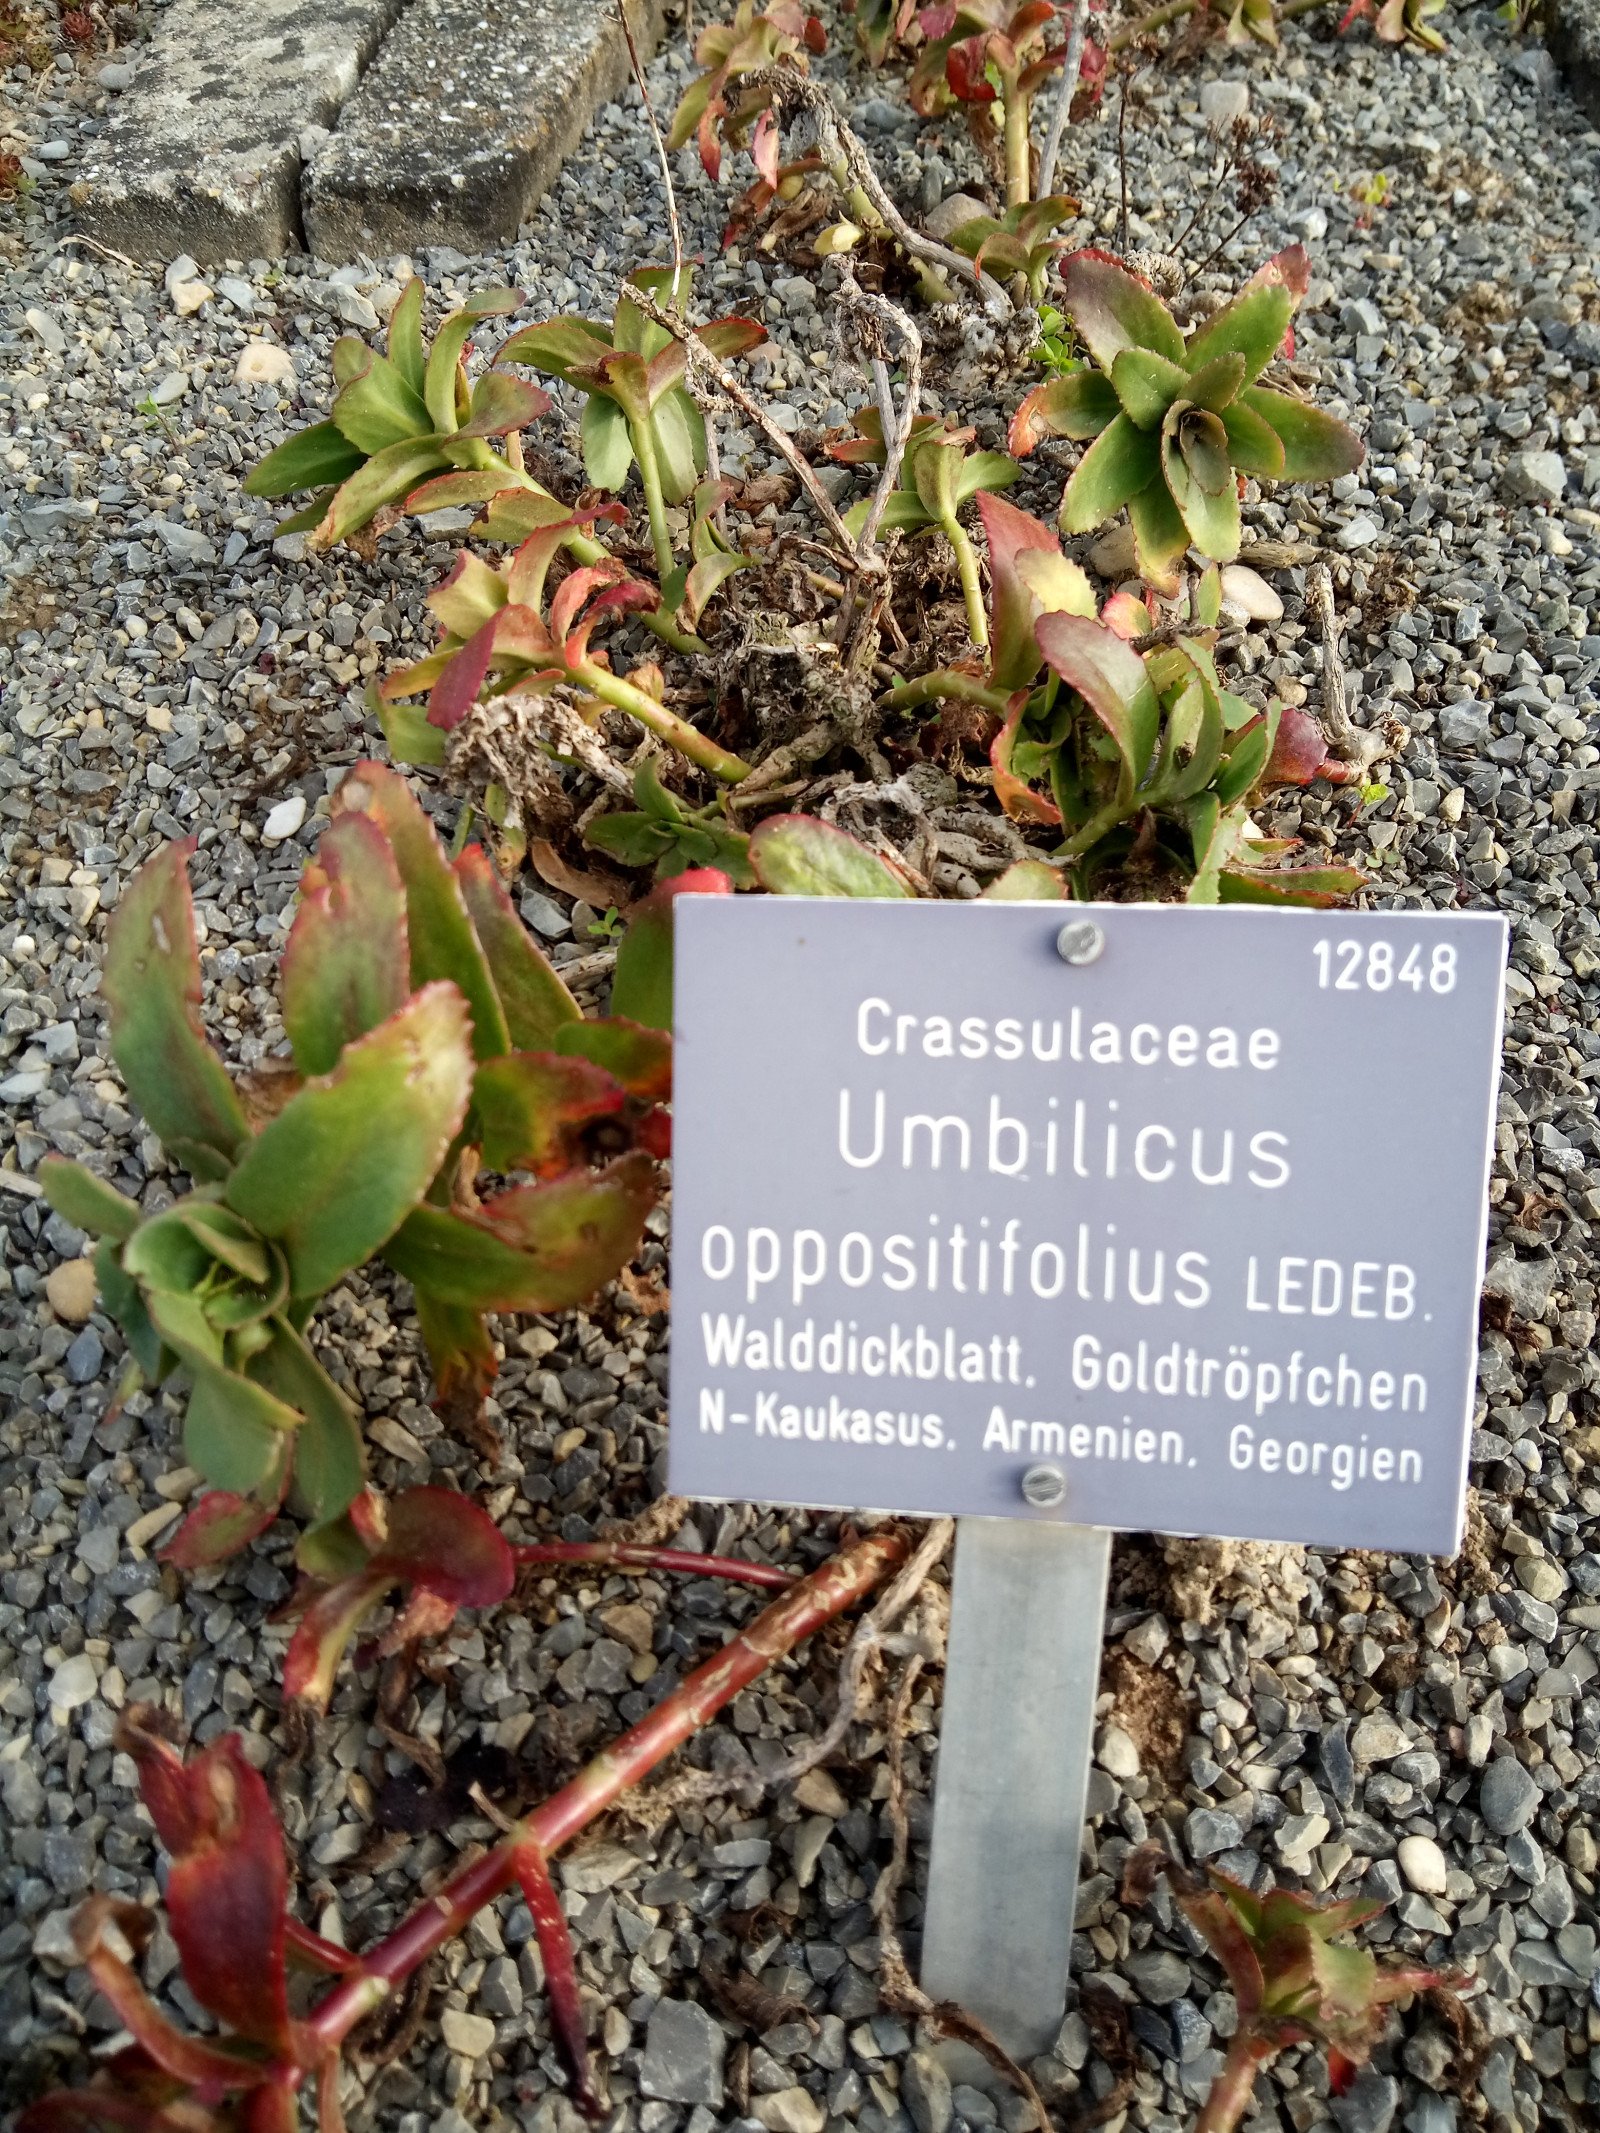 Chiastophyllum oppositifolium - Entire plant